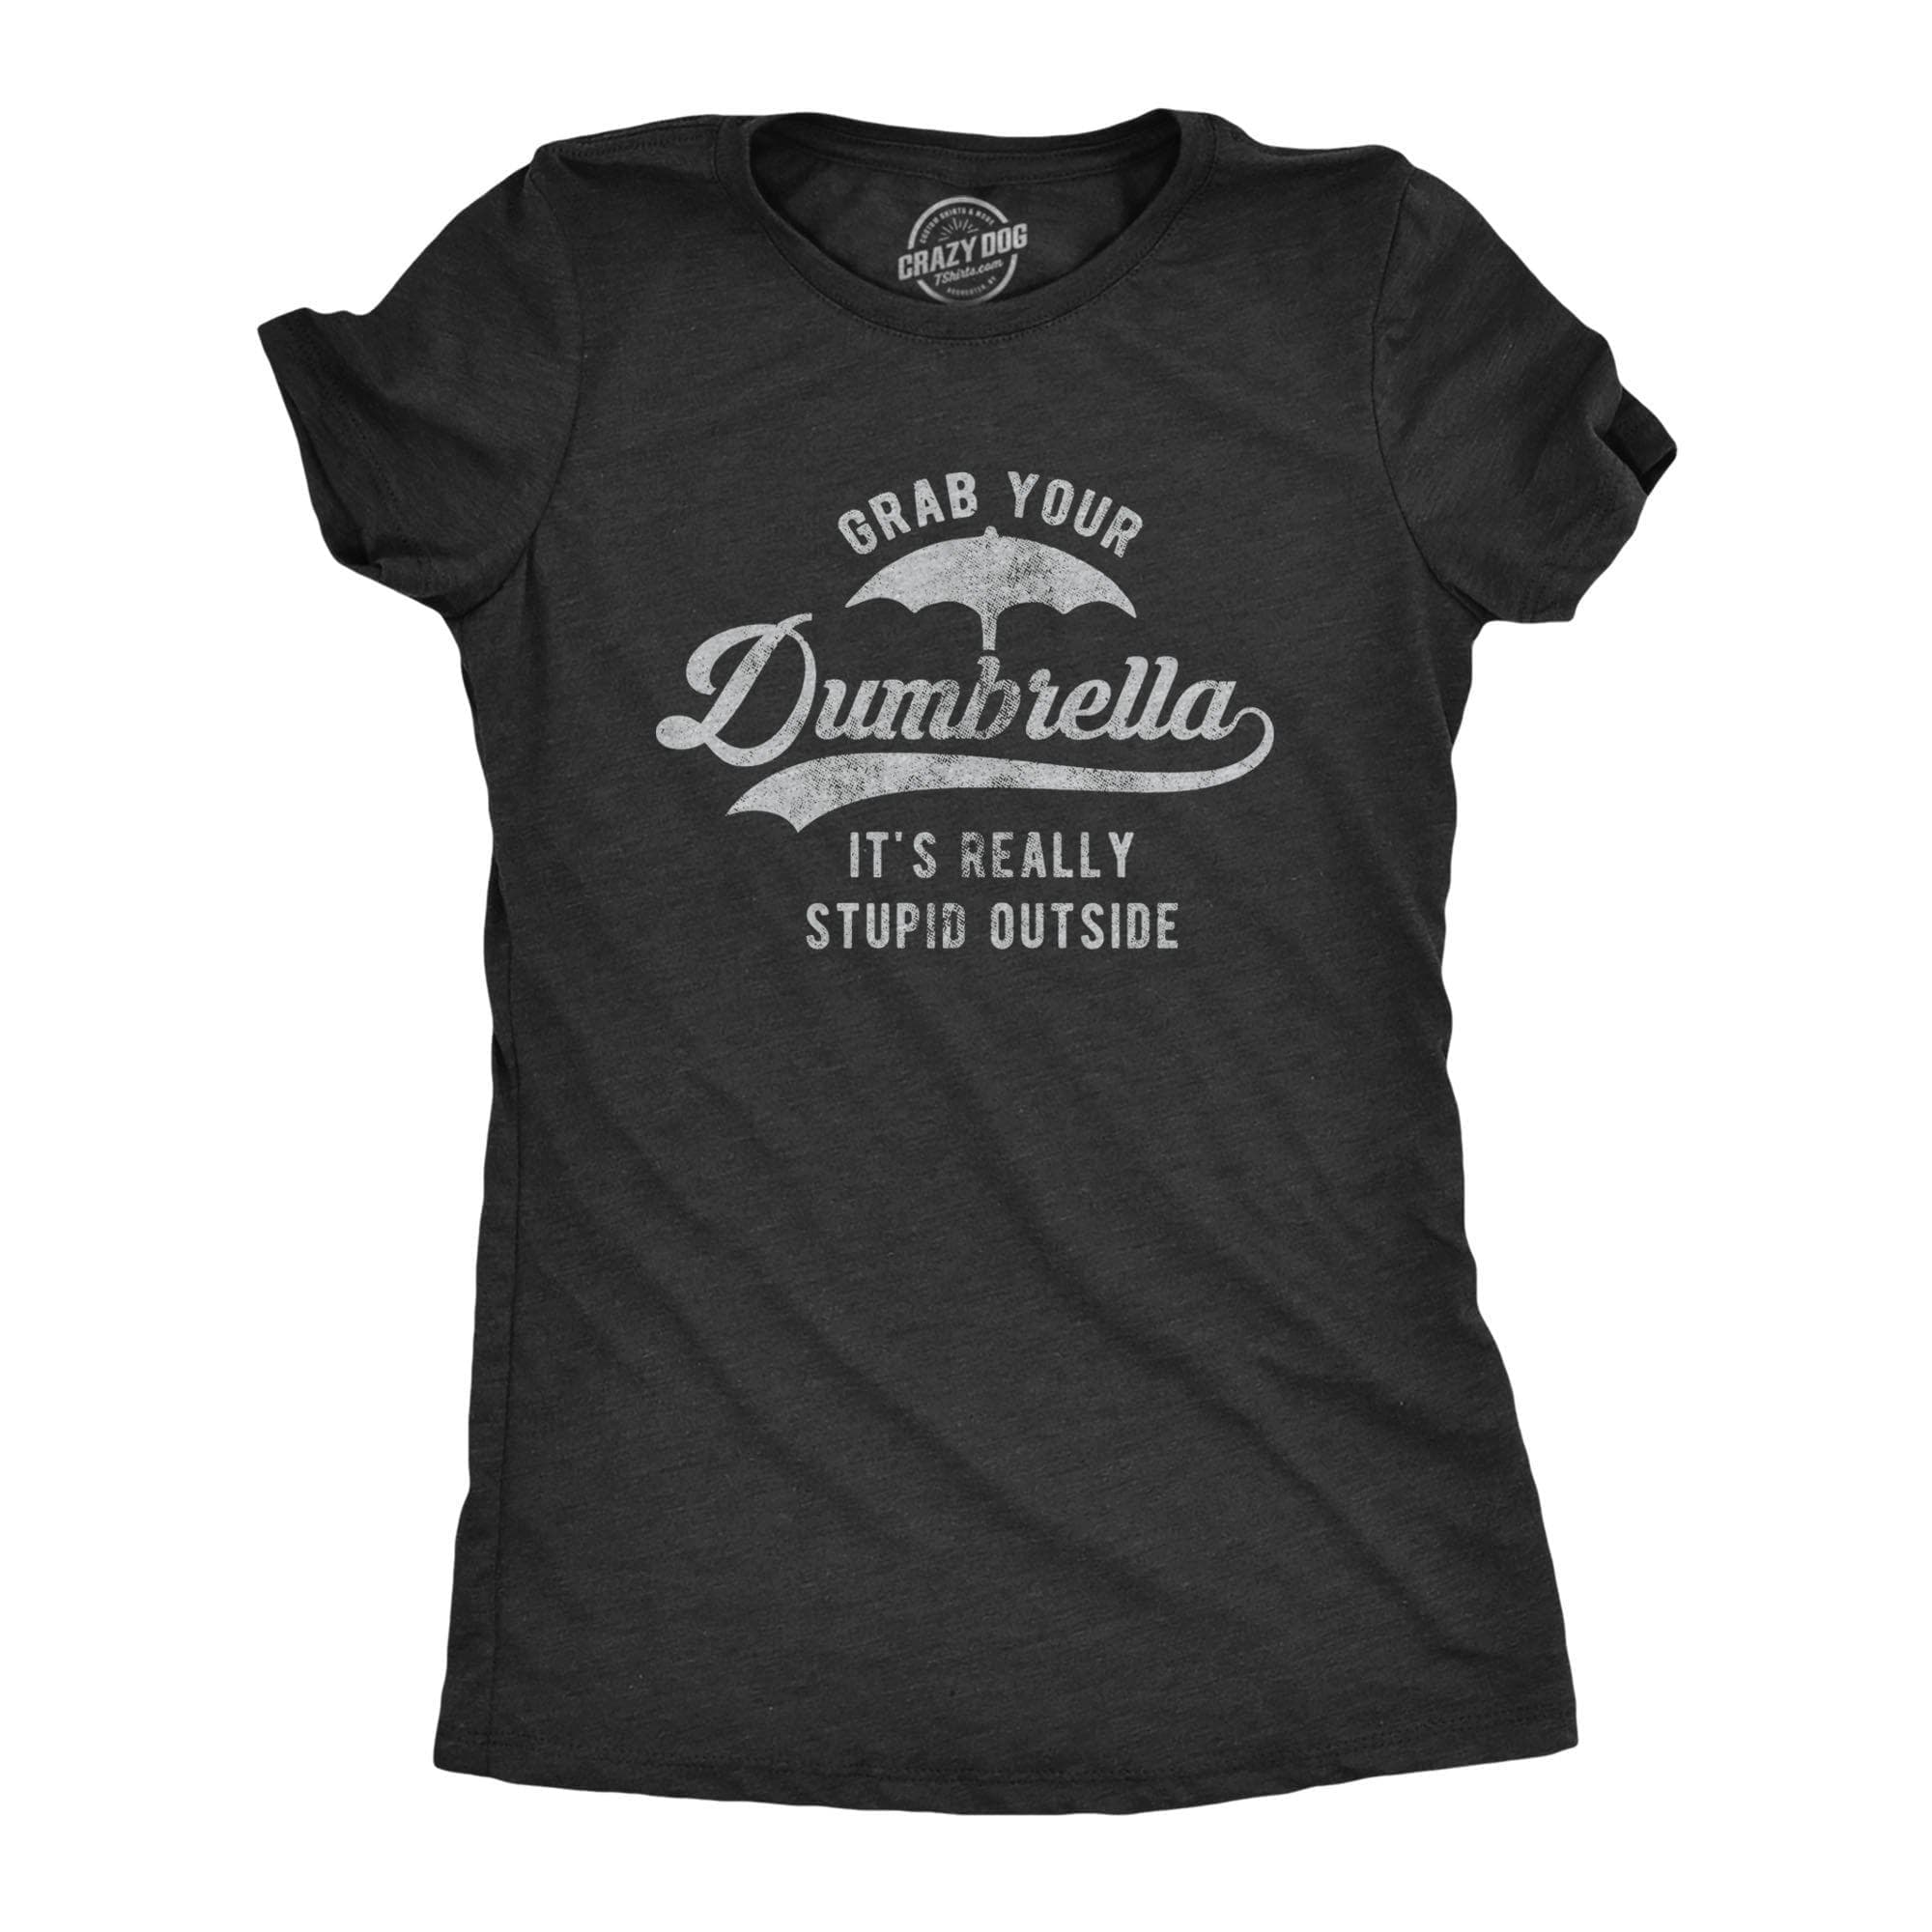 Grab Your Dumbrella Women's Tshirt - Crazy Dog T-Shirts